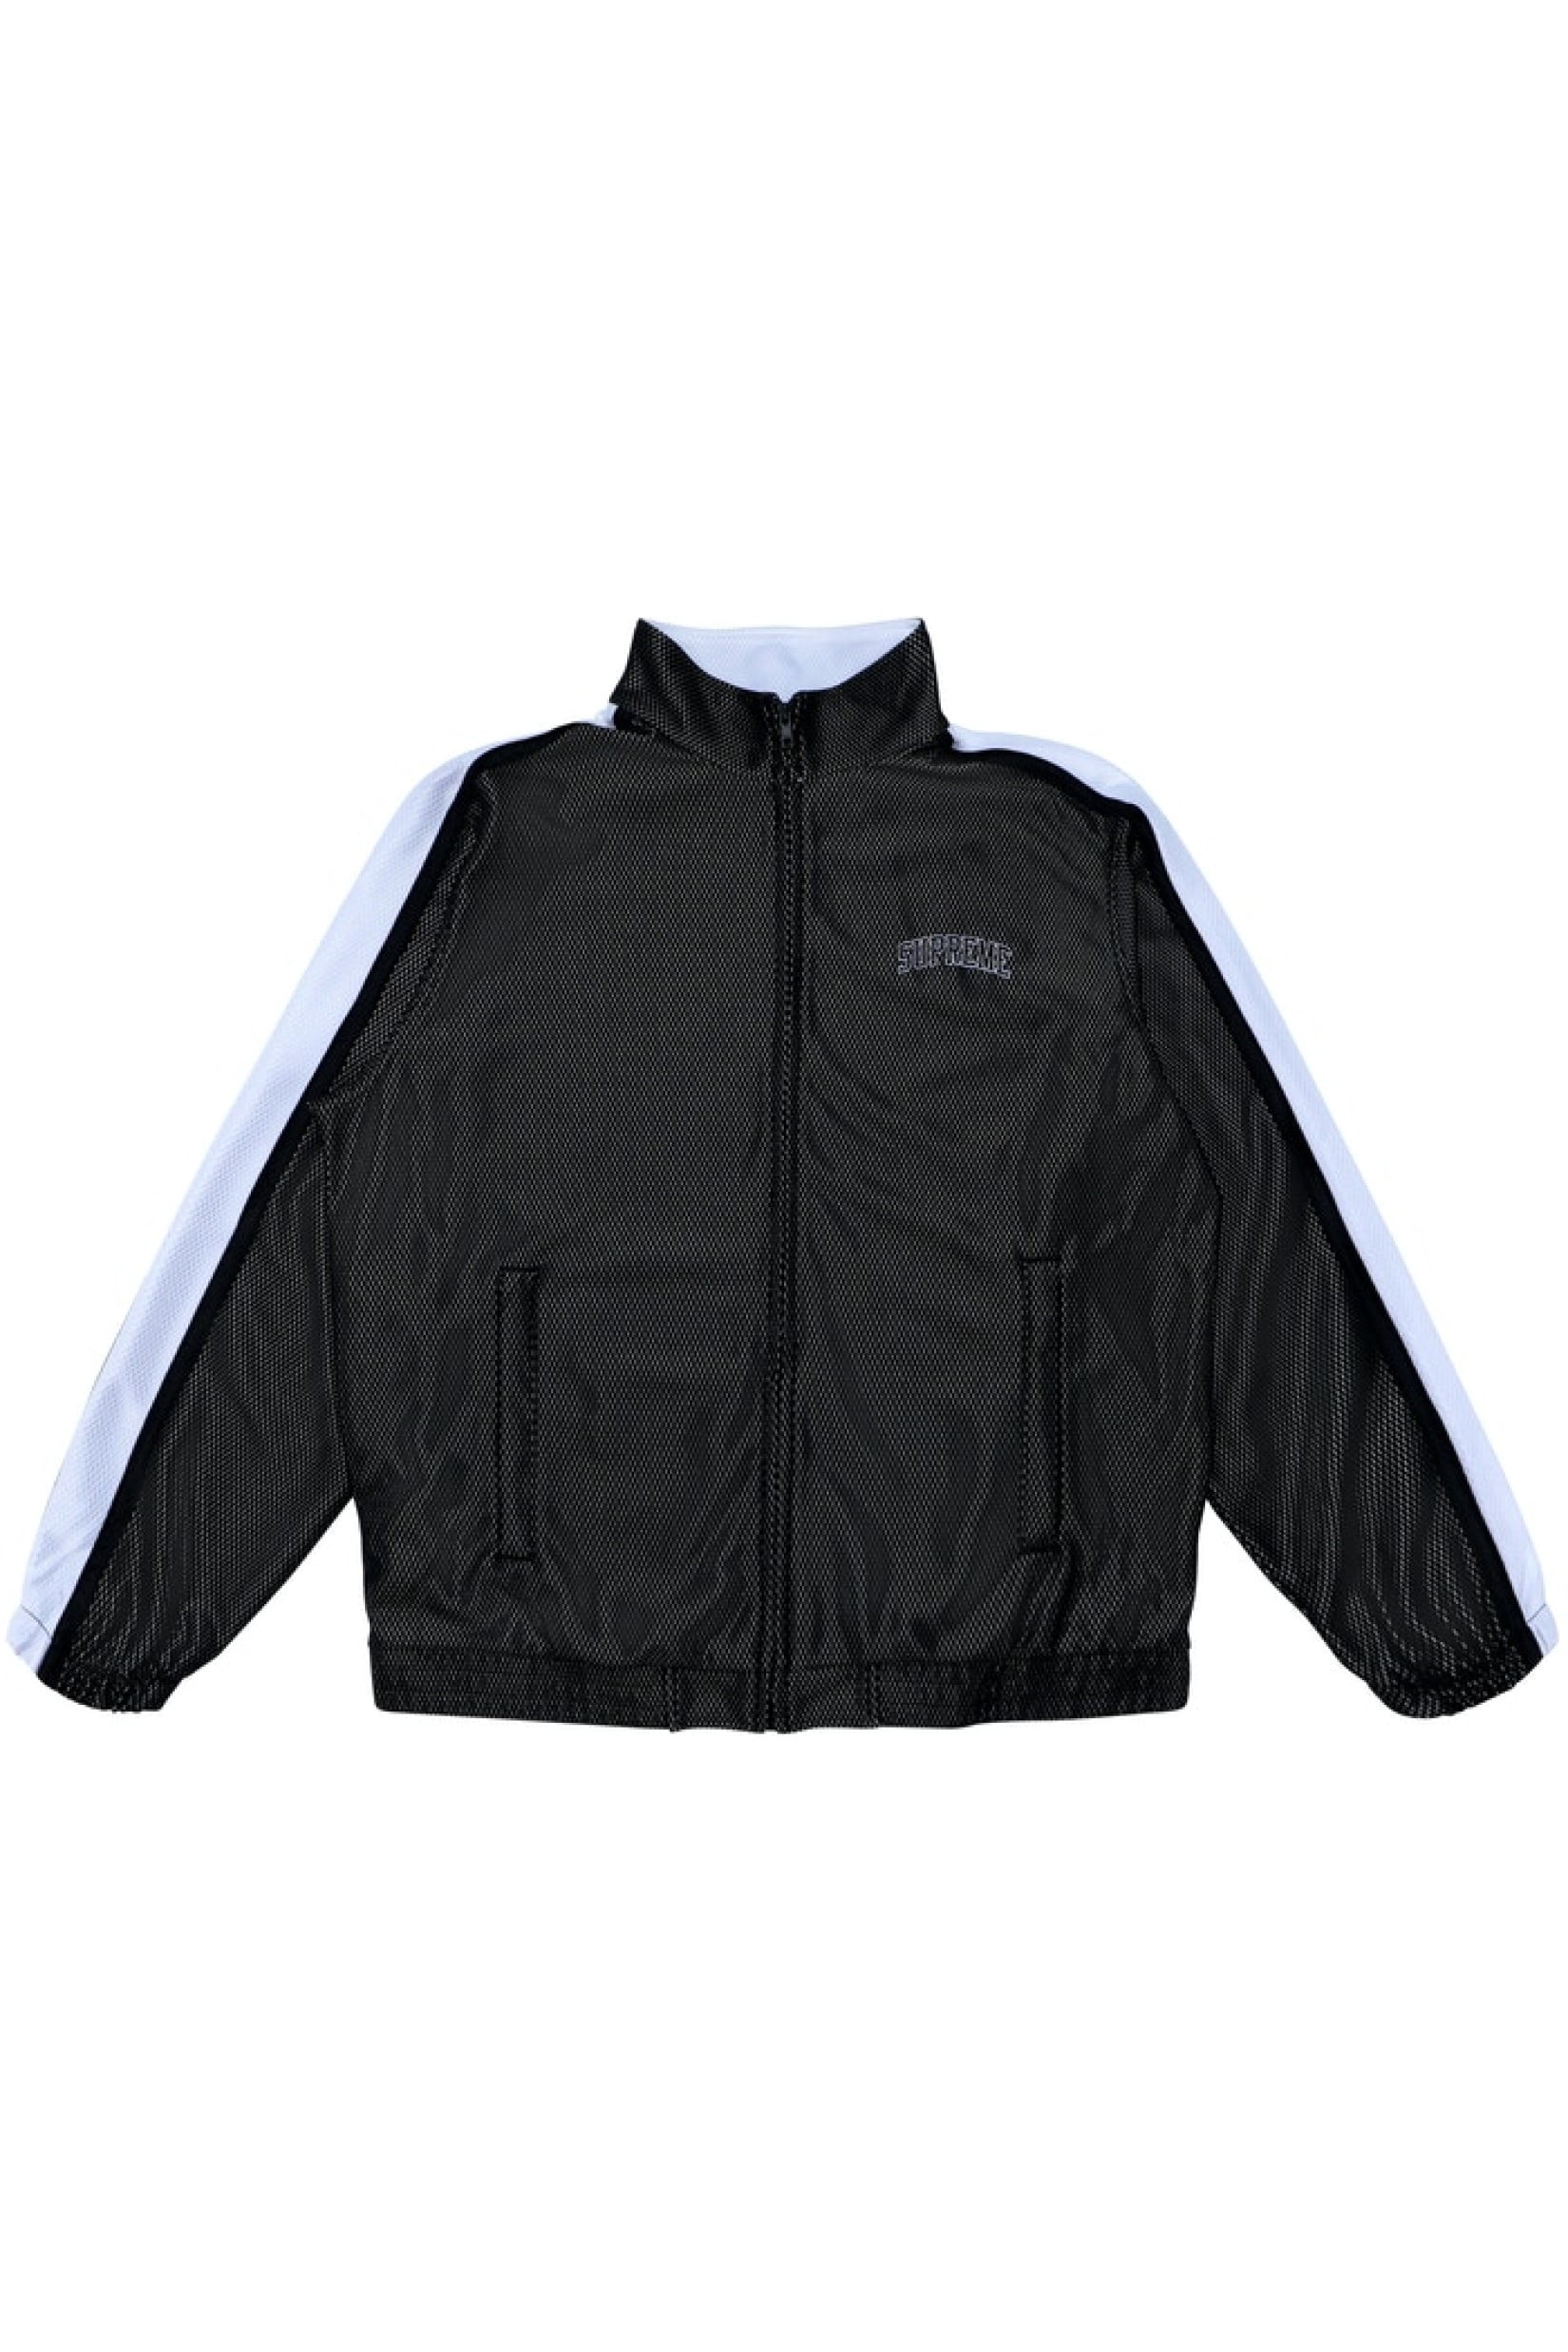 supreme bonded mesh track jacket